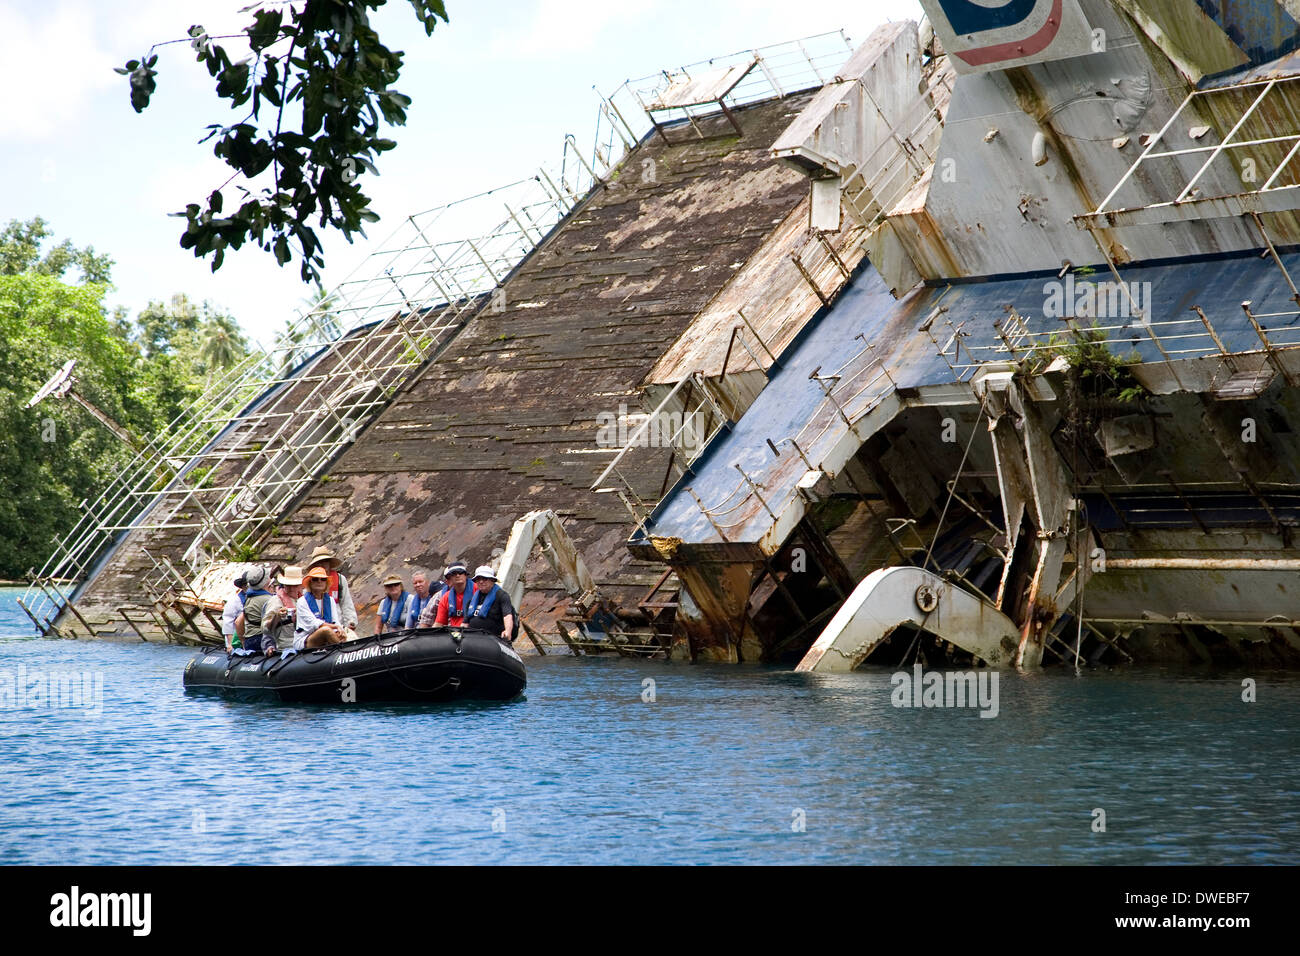 Le navire d'expédition, découvreur du monde, a frappé un récif et s'est échoué en 2001 à Nggela Island, Îles Salomon, Pacifique Sud Banque D'Images